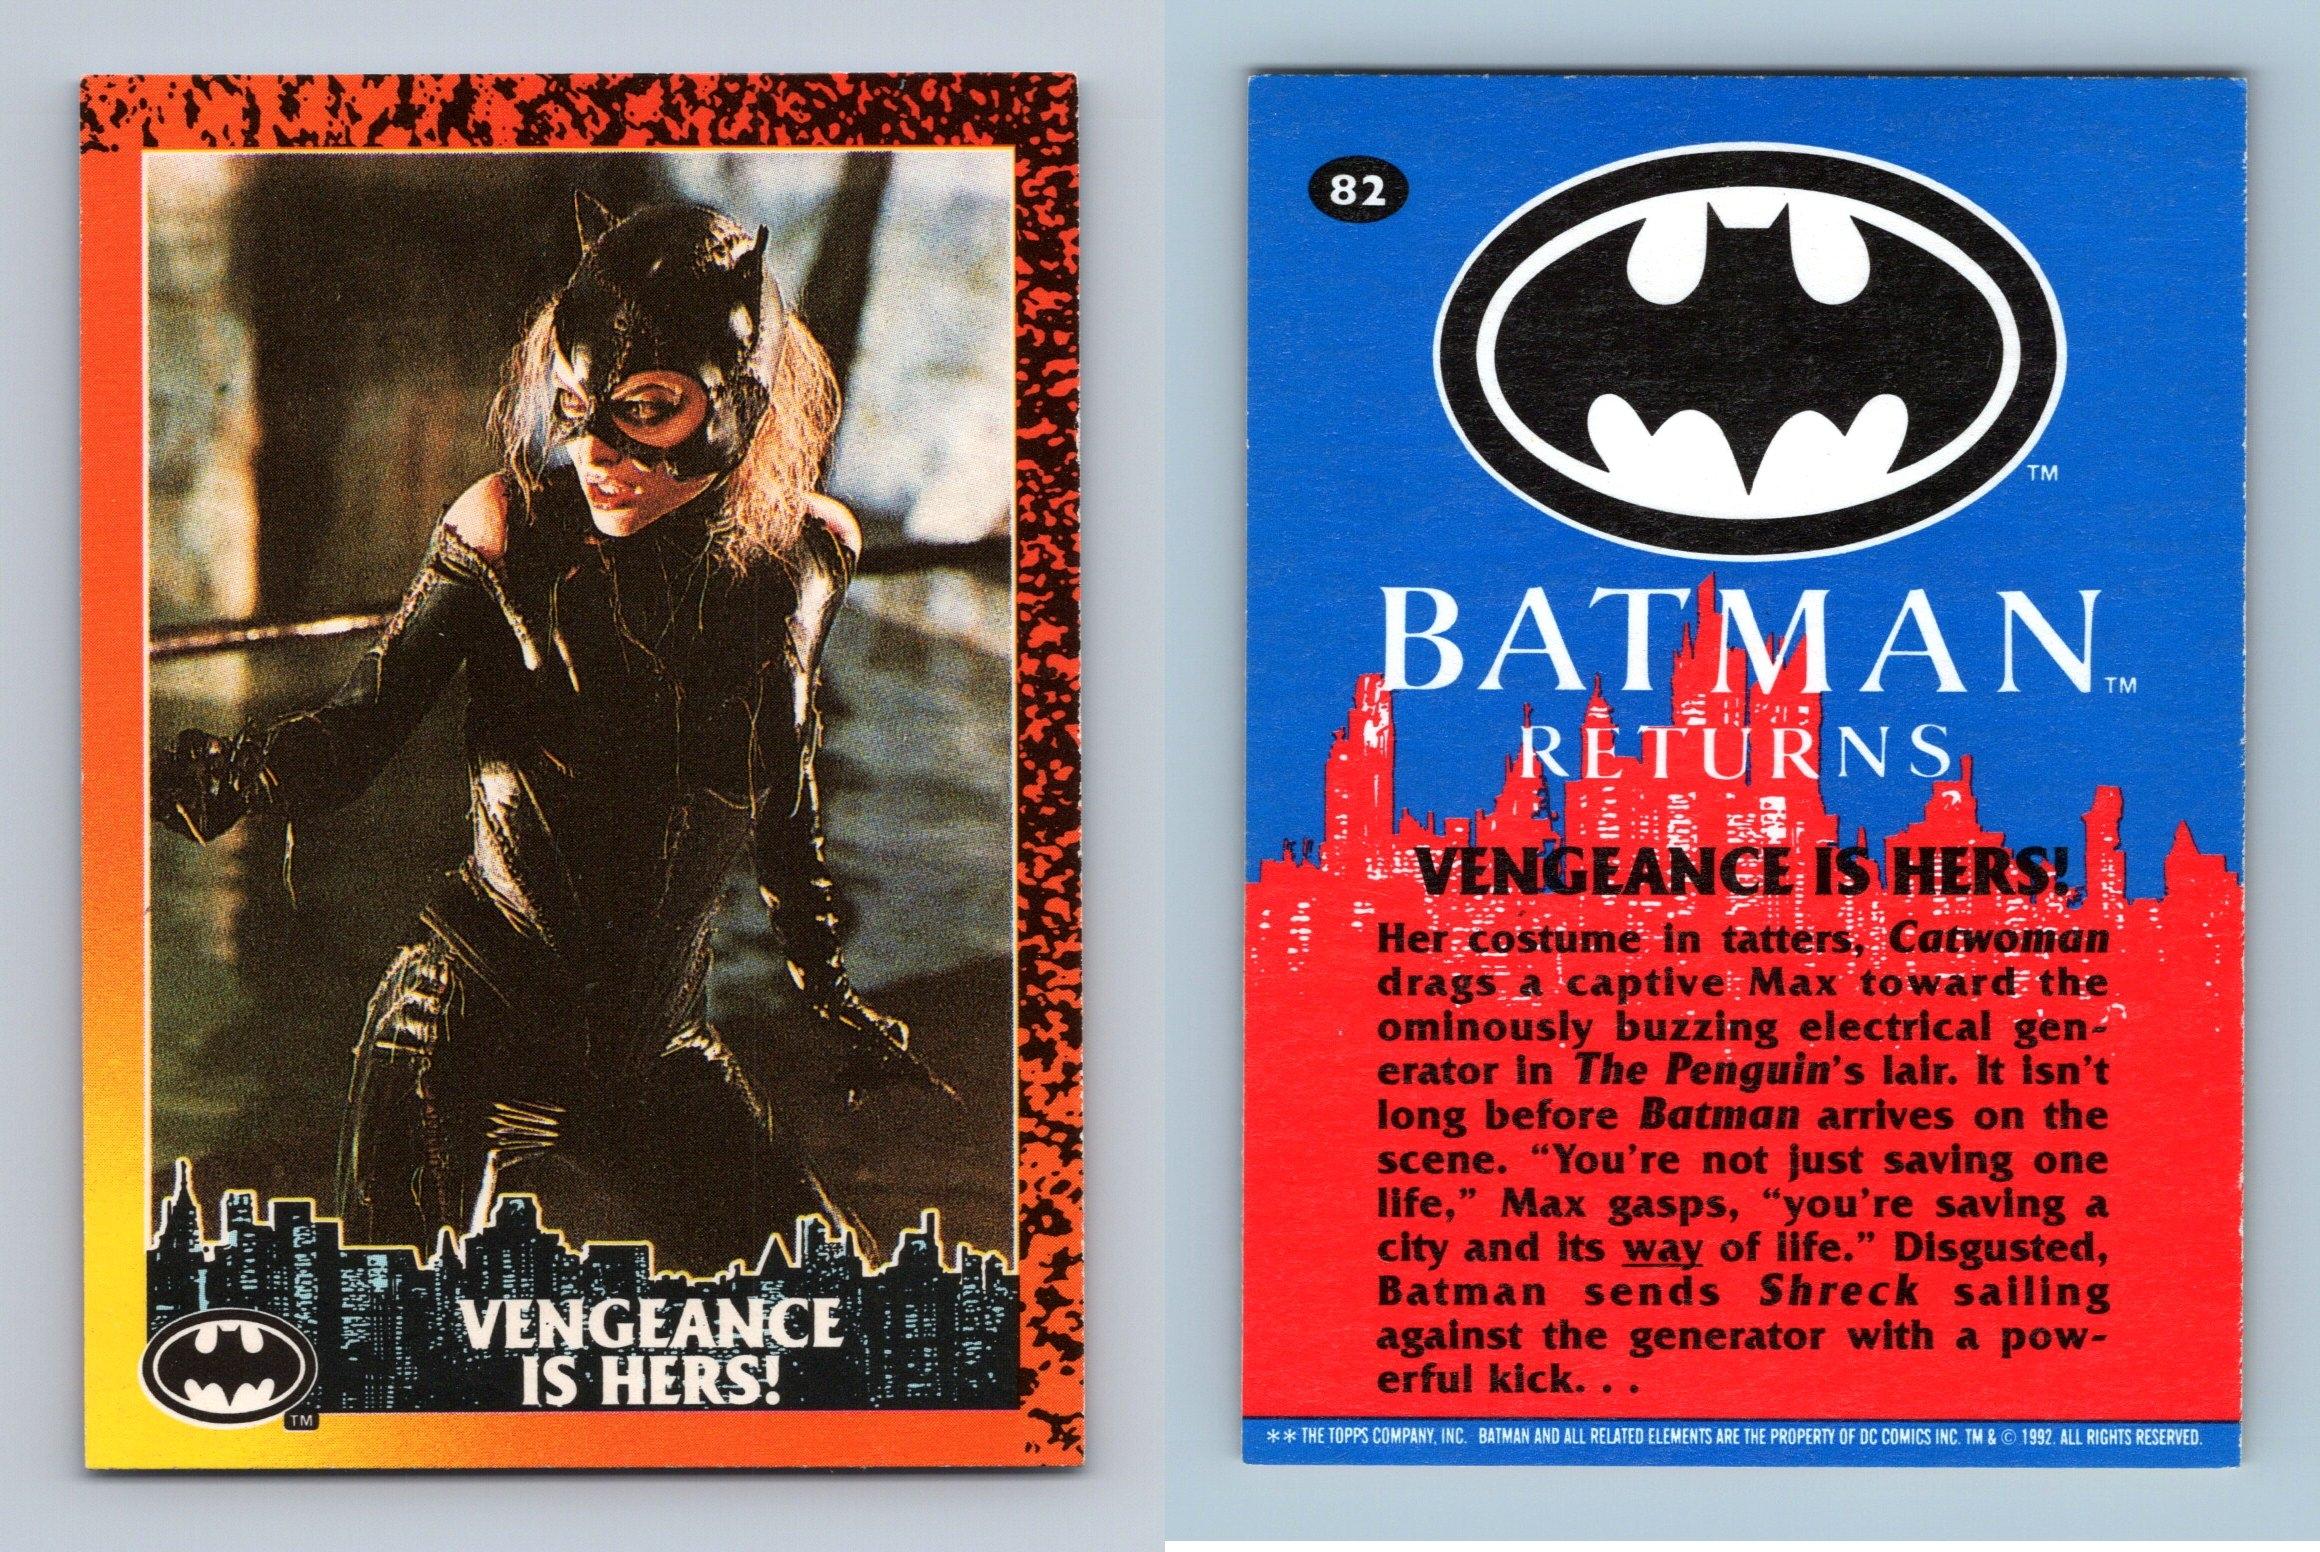 Vengeance Is Here #82 Batman Returns 1992 Topps Trading Card